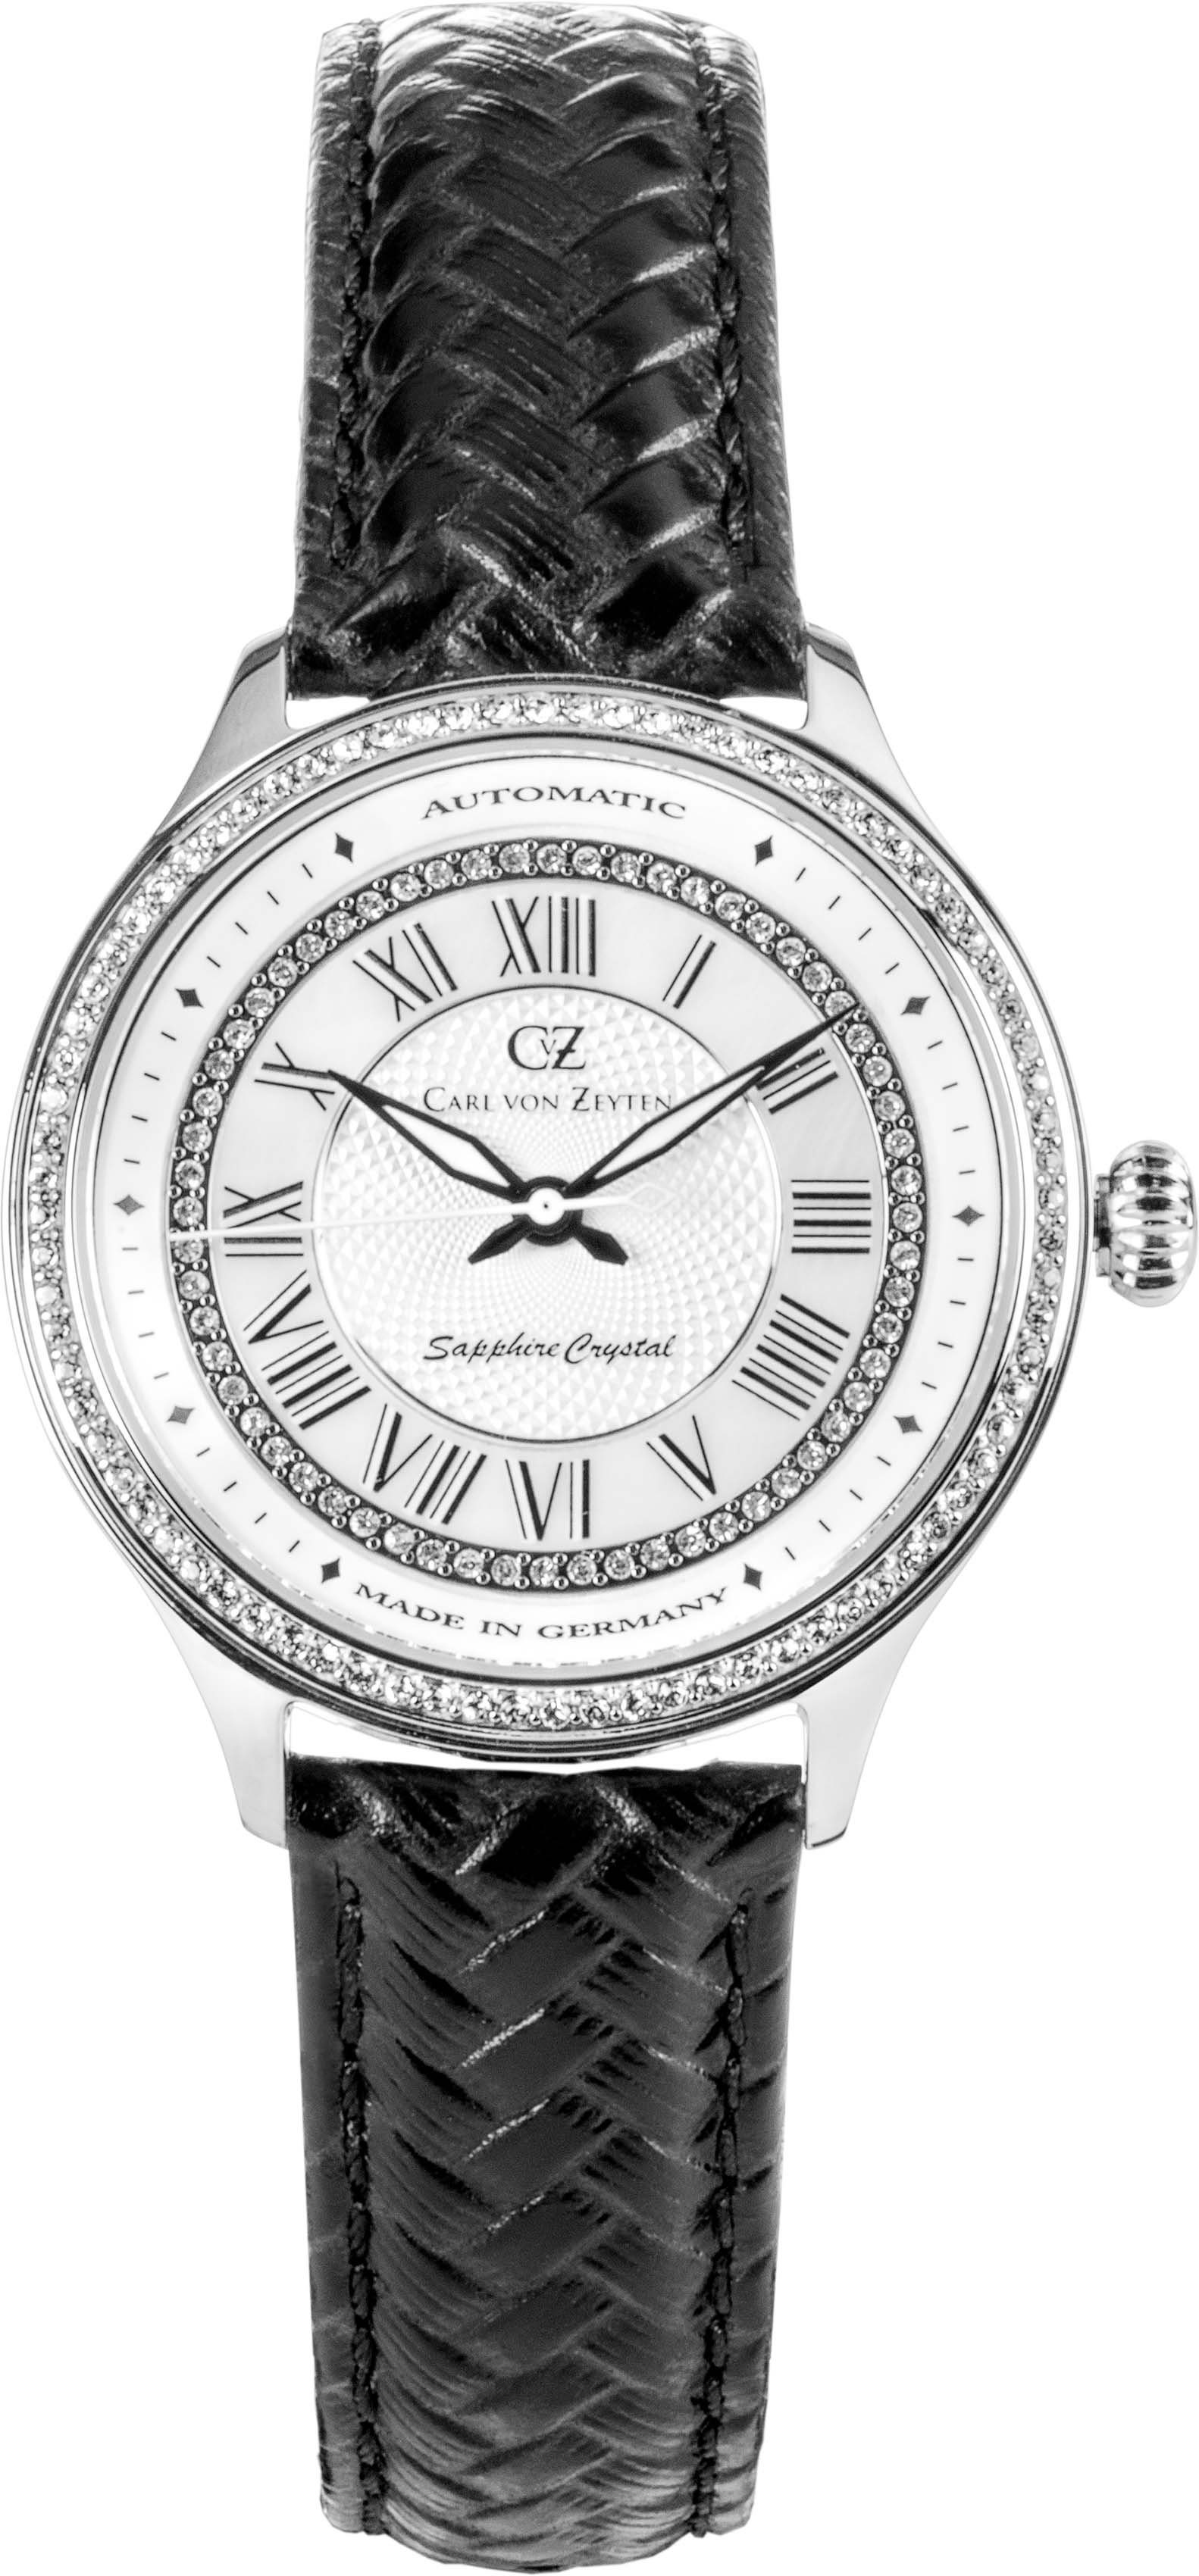 Carl von Zeyten Automatikuhr Hornberg, CVZ0068WHS, Armbanduhr, Damenuhr, Saphirglas, Made in Germany, Mechanische Uhr